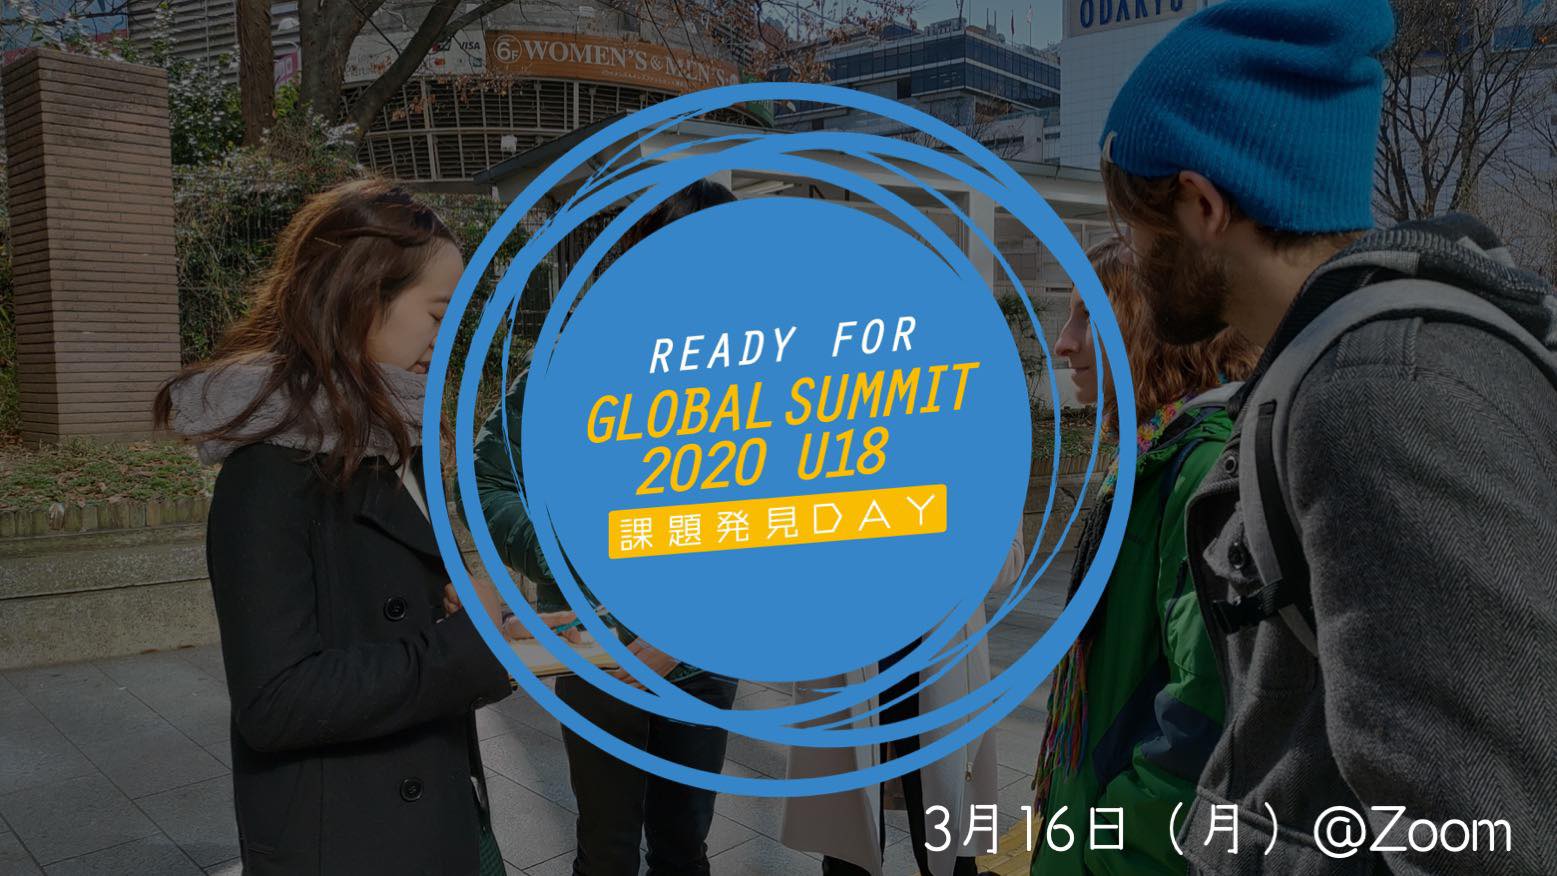 【誰一人取り残さない世界を作るゲーム】Ready for Global summit 2020 U18 課題発見 DAY